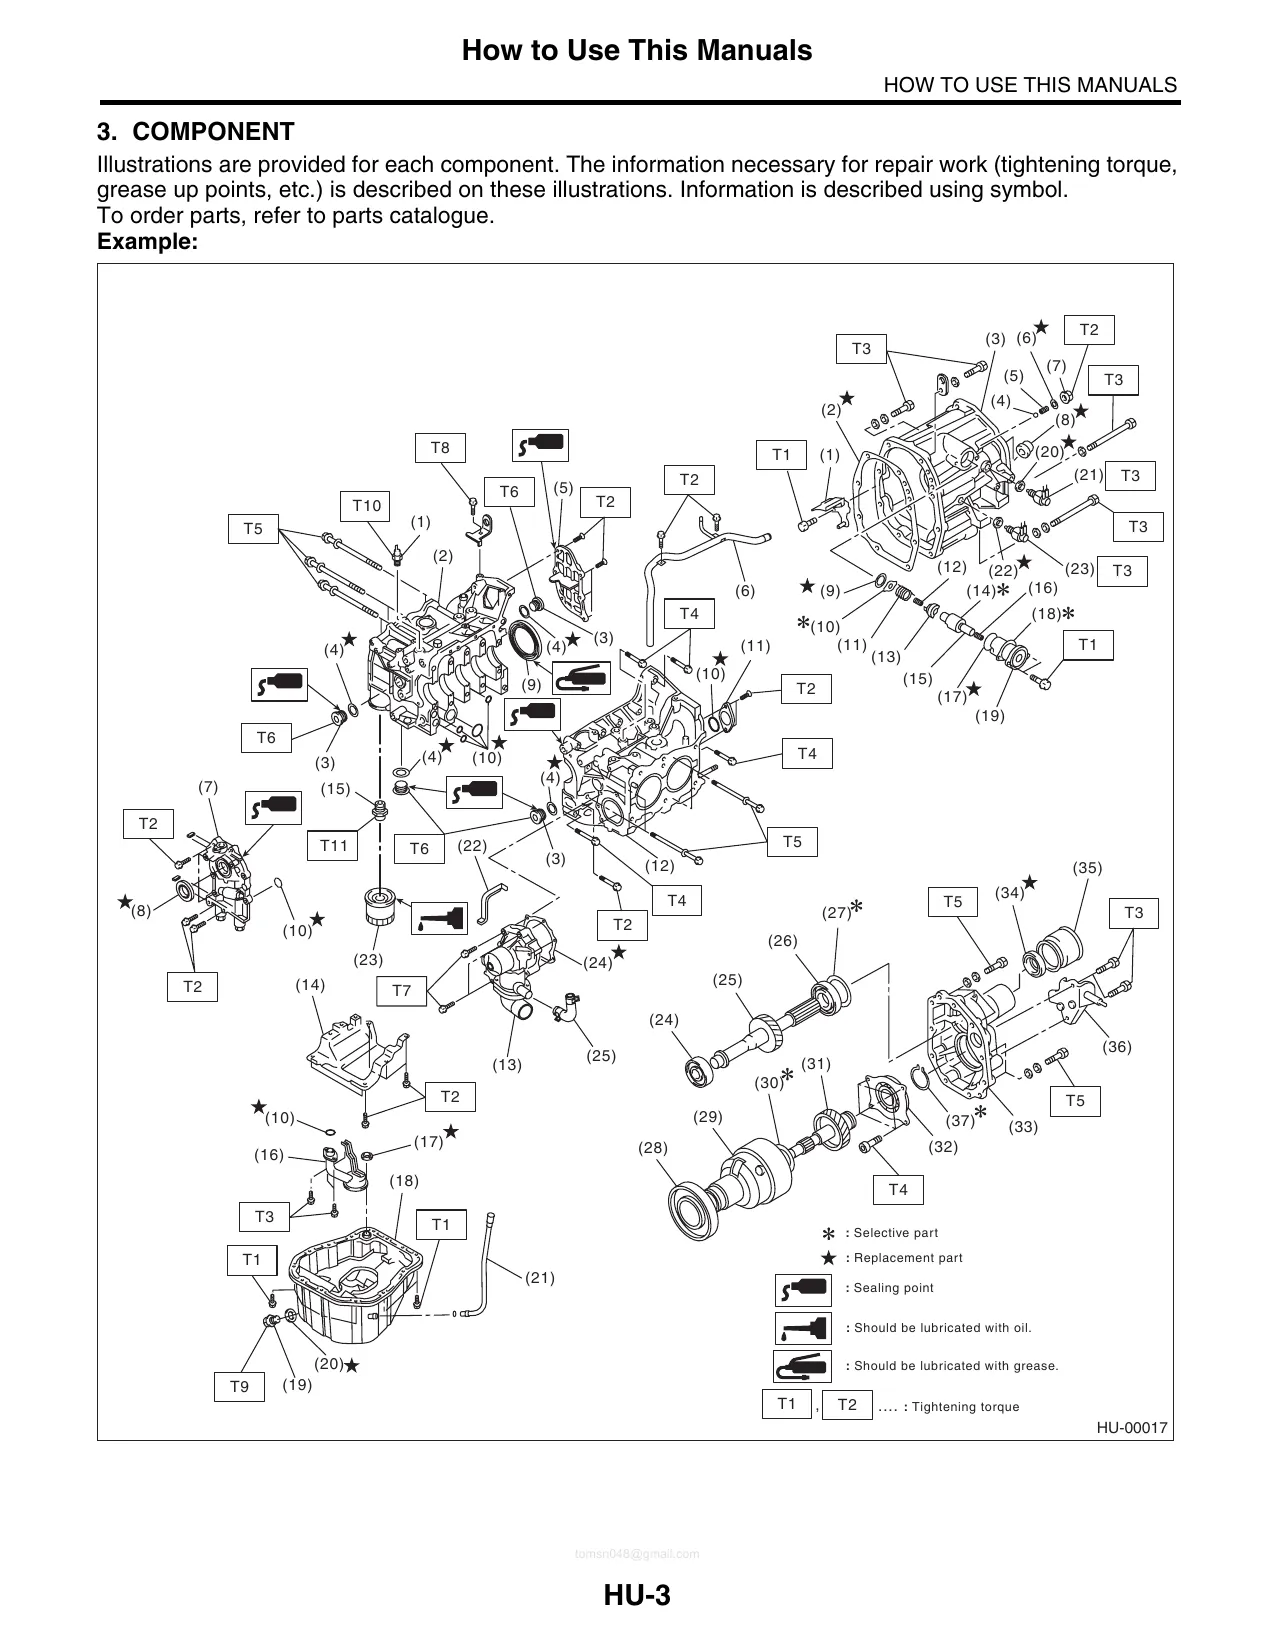 2008-2009 Subaru Legacy repair manual Preview image 1